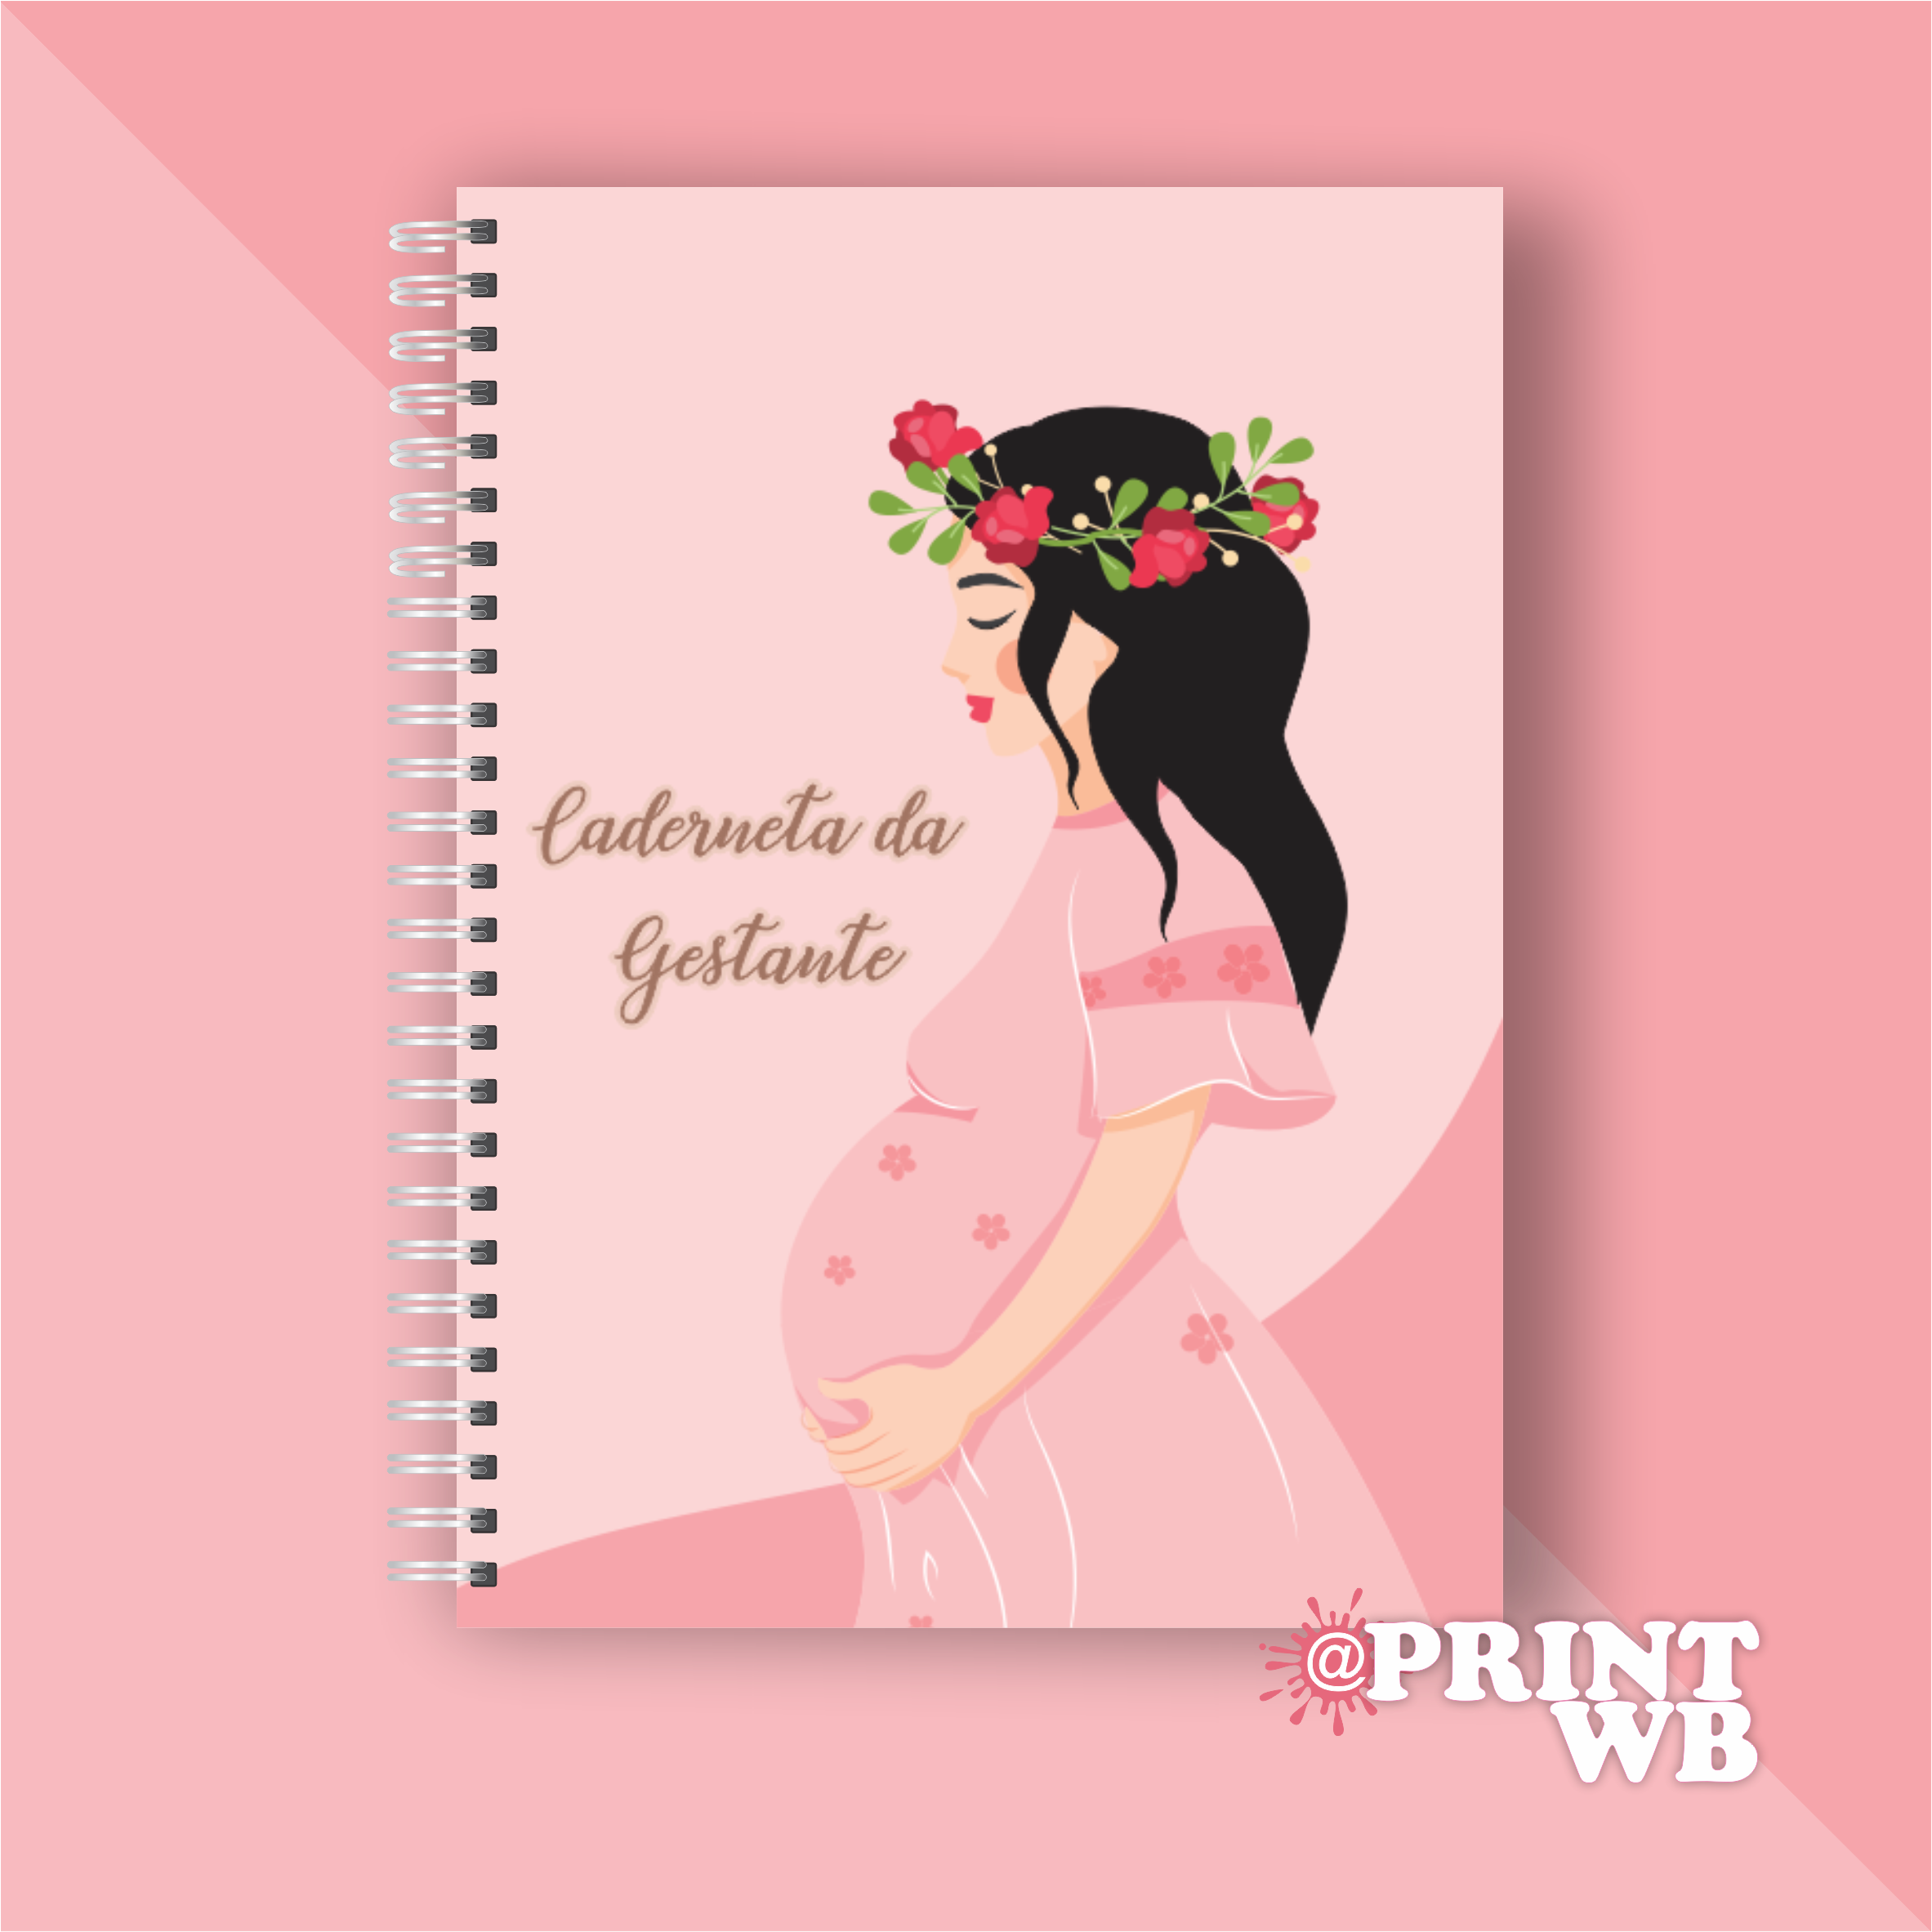 Caderneta da Gestante – Printwb – Produtos Personalizados